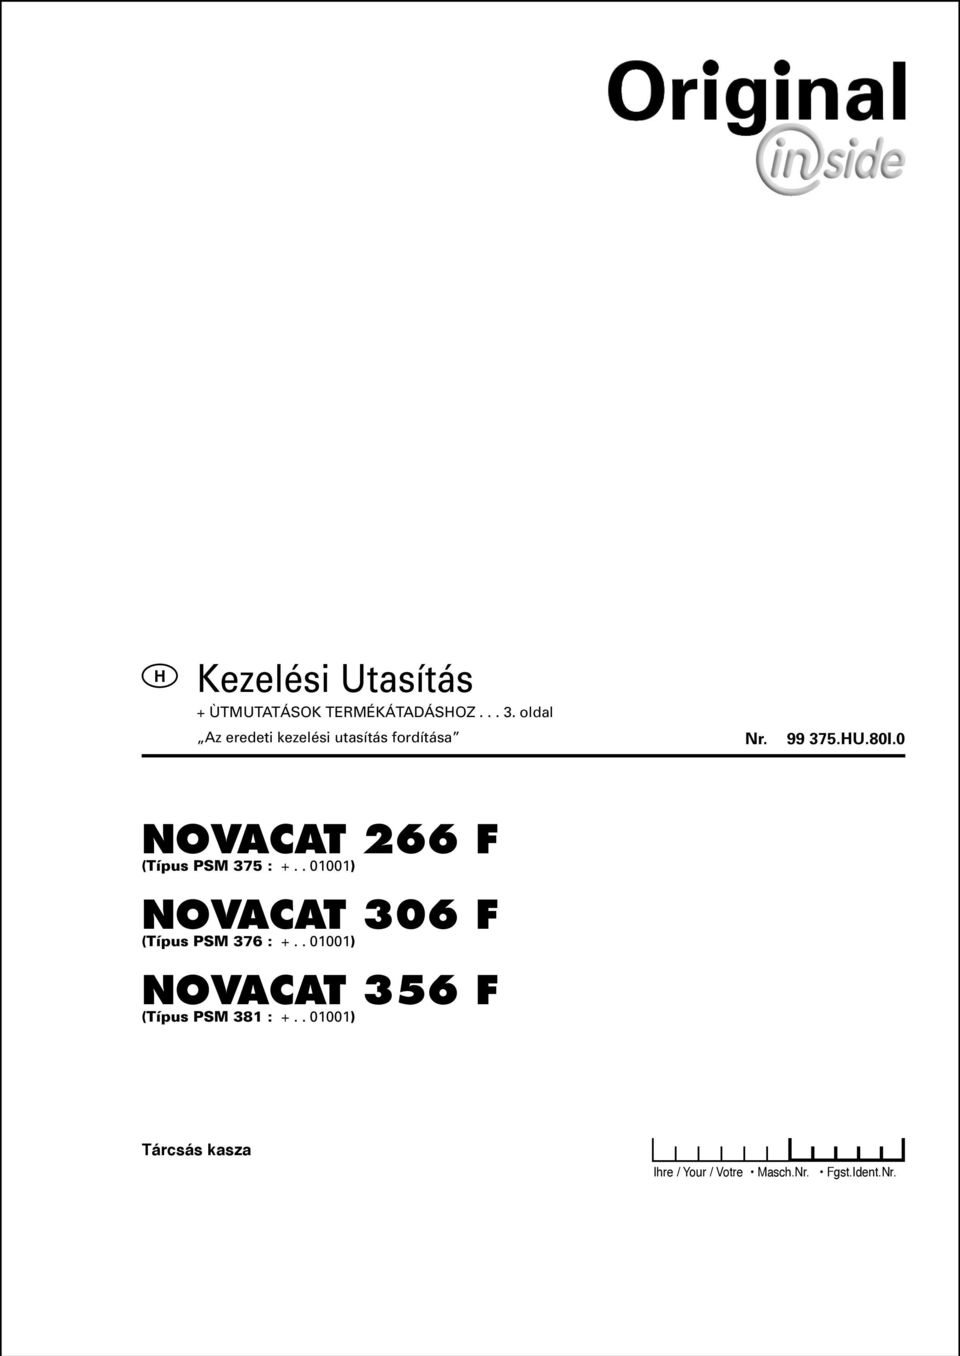 . 01001) NOVACAT 356 F (Típus PSM 381 : +.